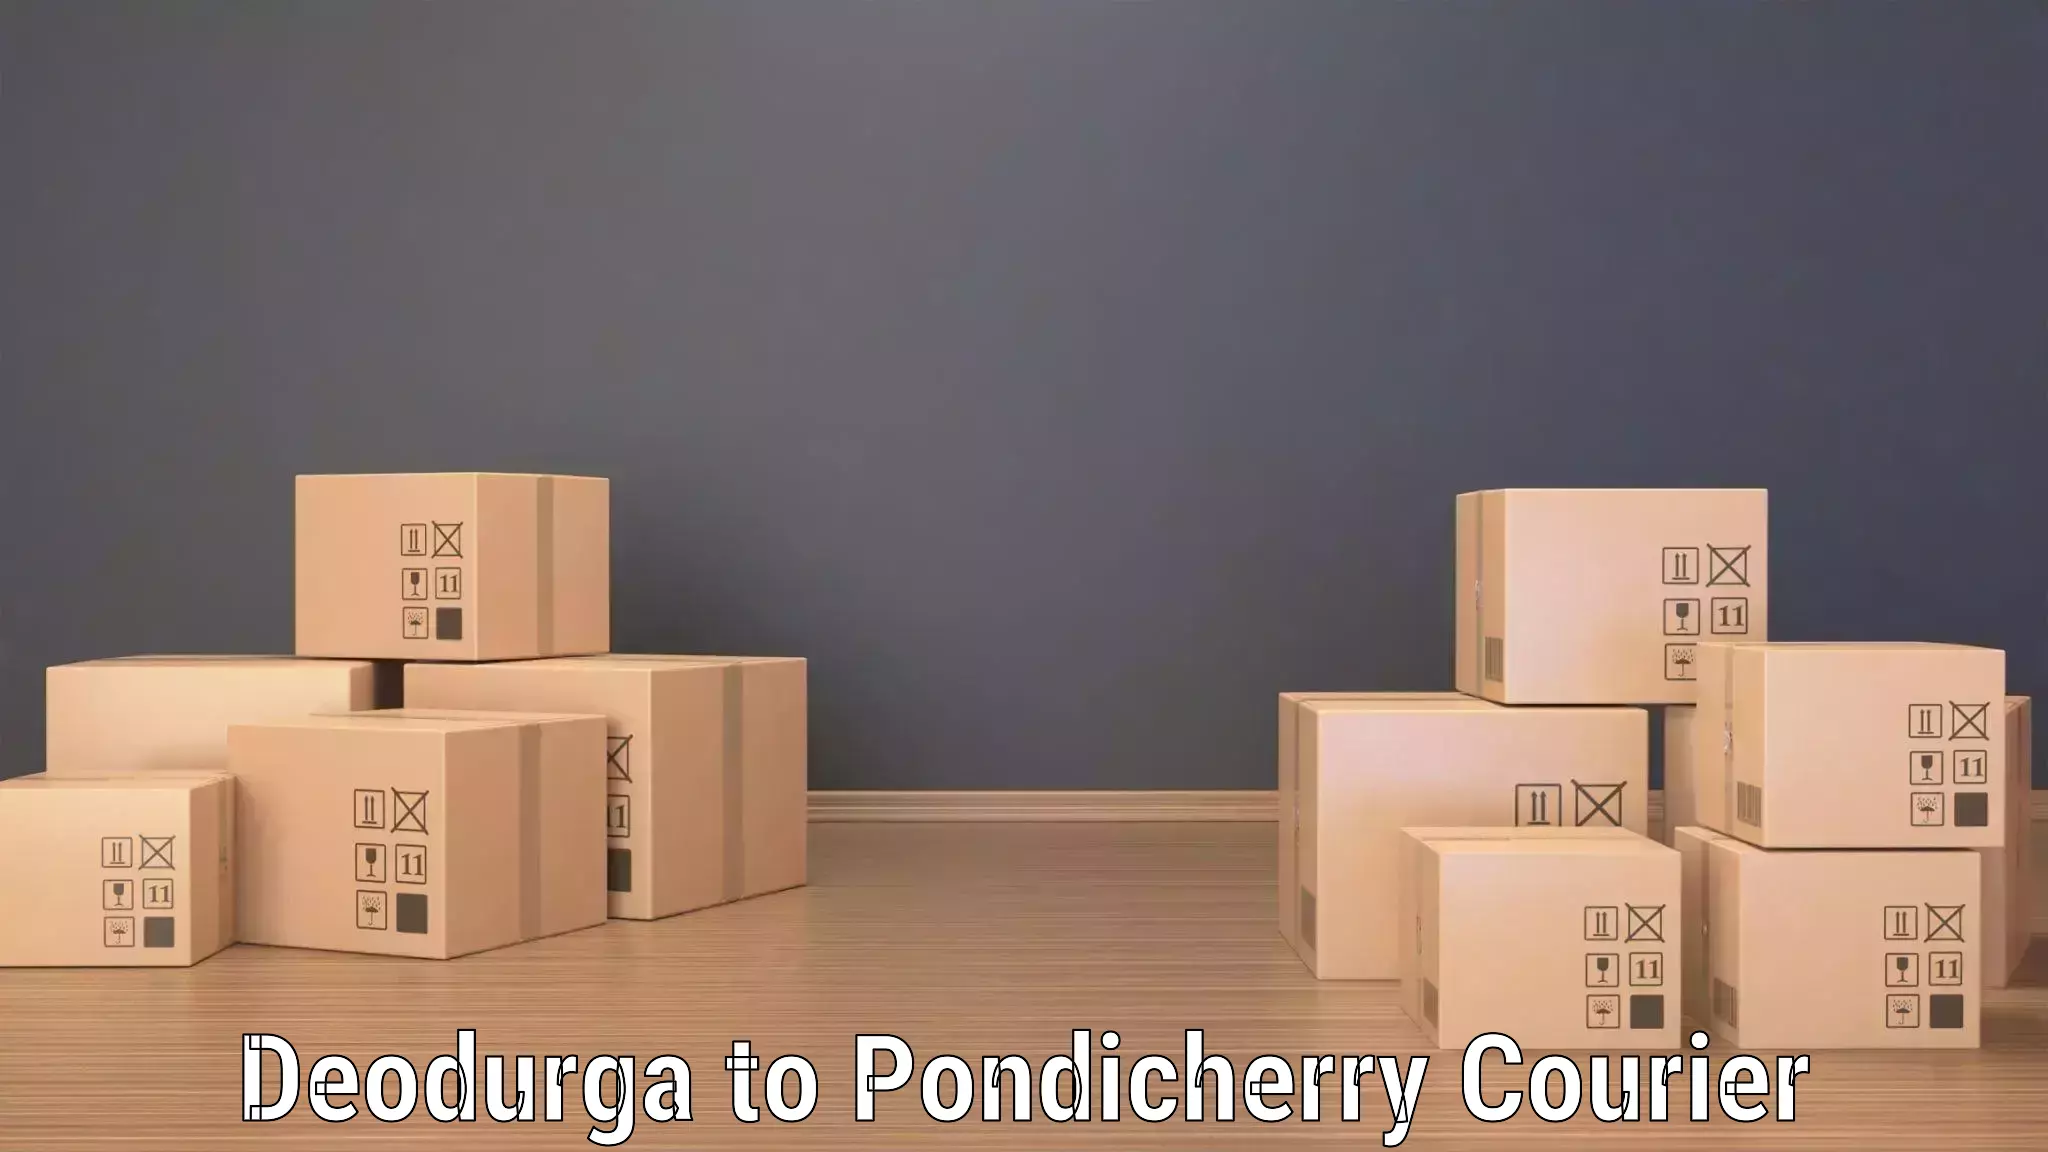 Multi-modal transport Deodurga to Pondicherry